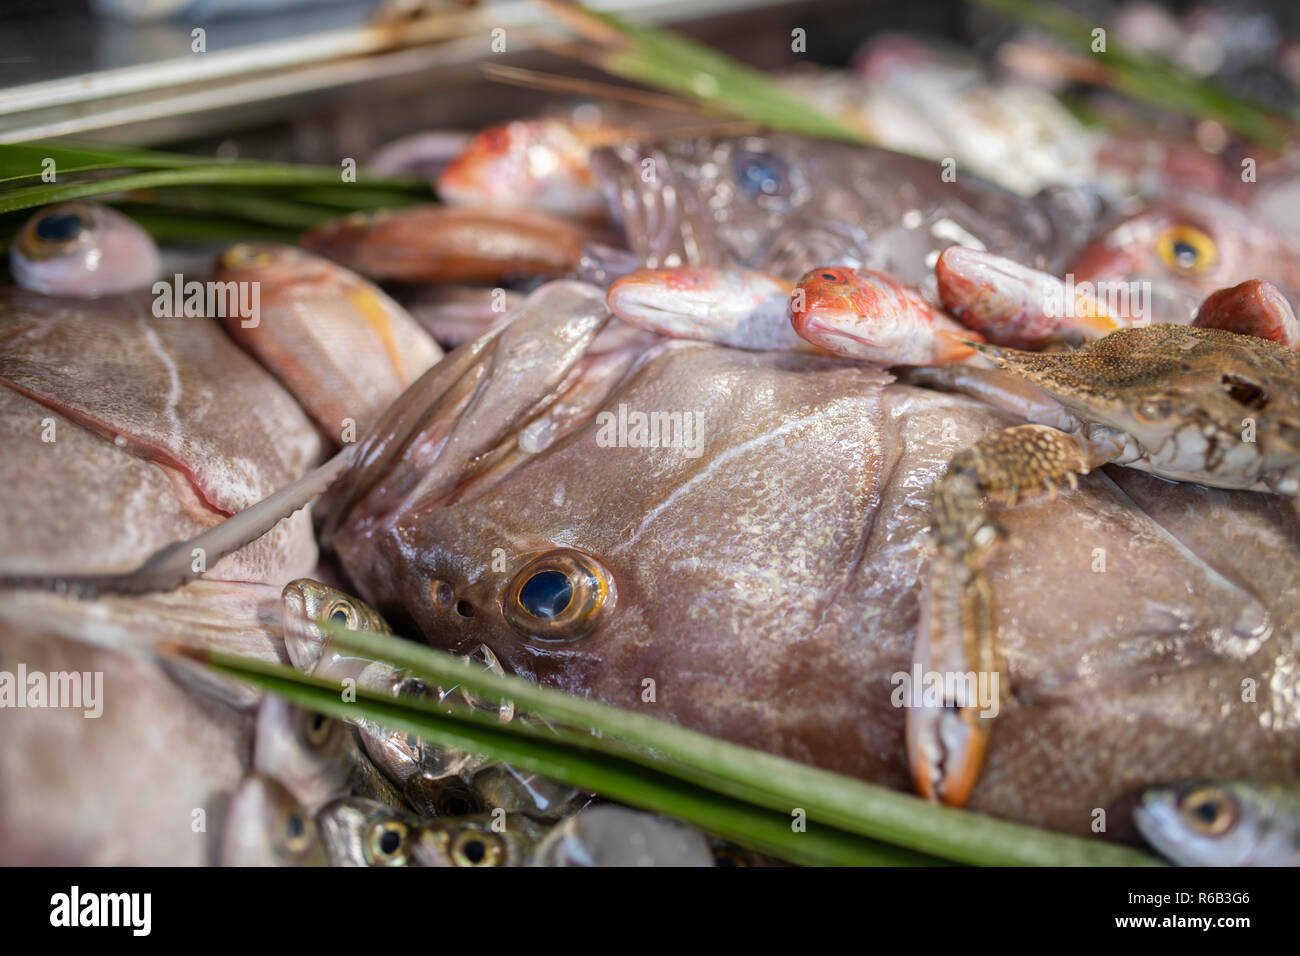 Aragosta, polpo, triglie, Boops boops, spigola, orata, bianco raggruppatore, gamberi e vari piatti di pesce fresco di mare e i pesci sul ghiaccio nel mercato del pesce Foto Stock